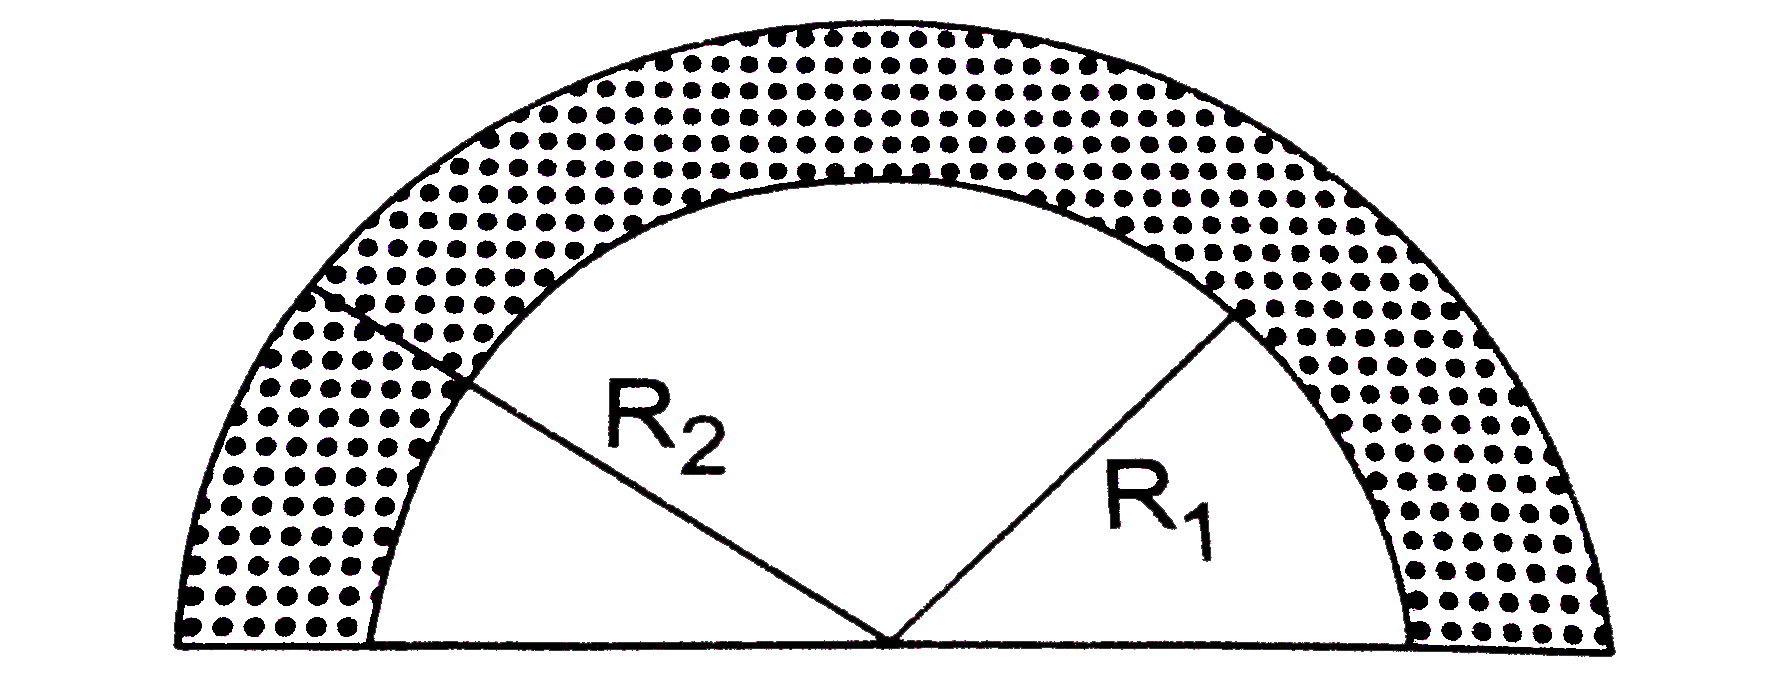 वृत्त के चाप के आकार में बनी एक समांग पट्टी की भीतरी एवं बाहरी त्रिज्याएँ क्रमशः R(1) तथा R(2) है | इसके द्रव्यमान केंद्र की स्थिति ज्ञात करें |